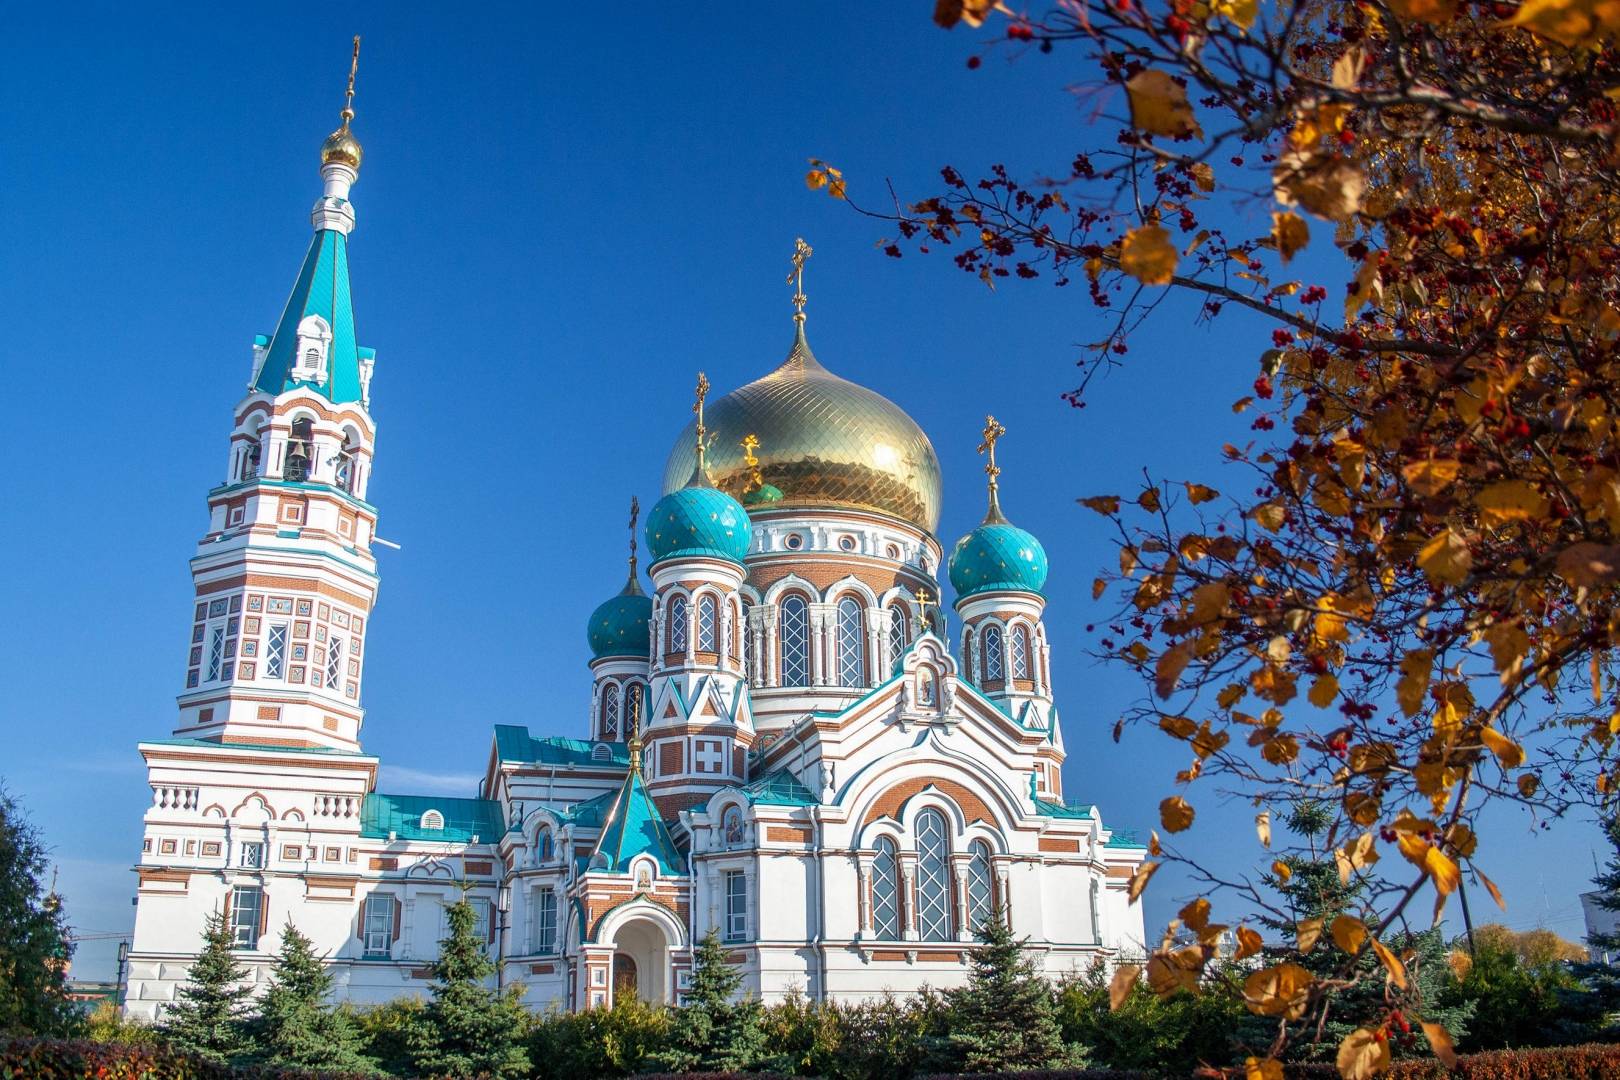 Достопримечательности и святыни успенского собора московского кремля